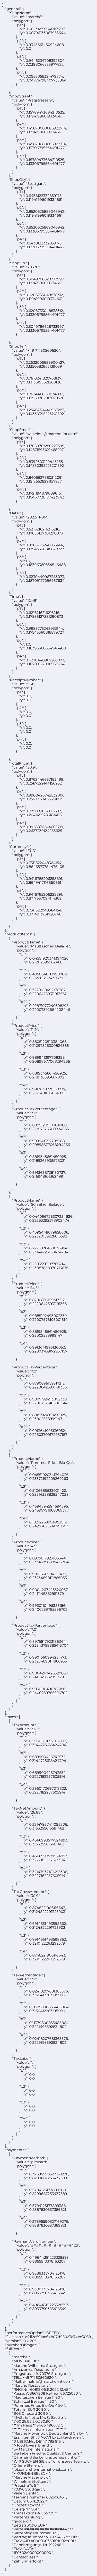 JSON data of a receipt